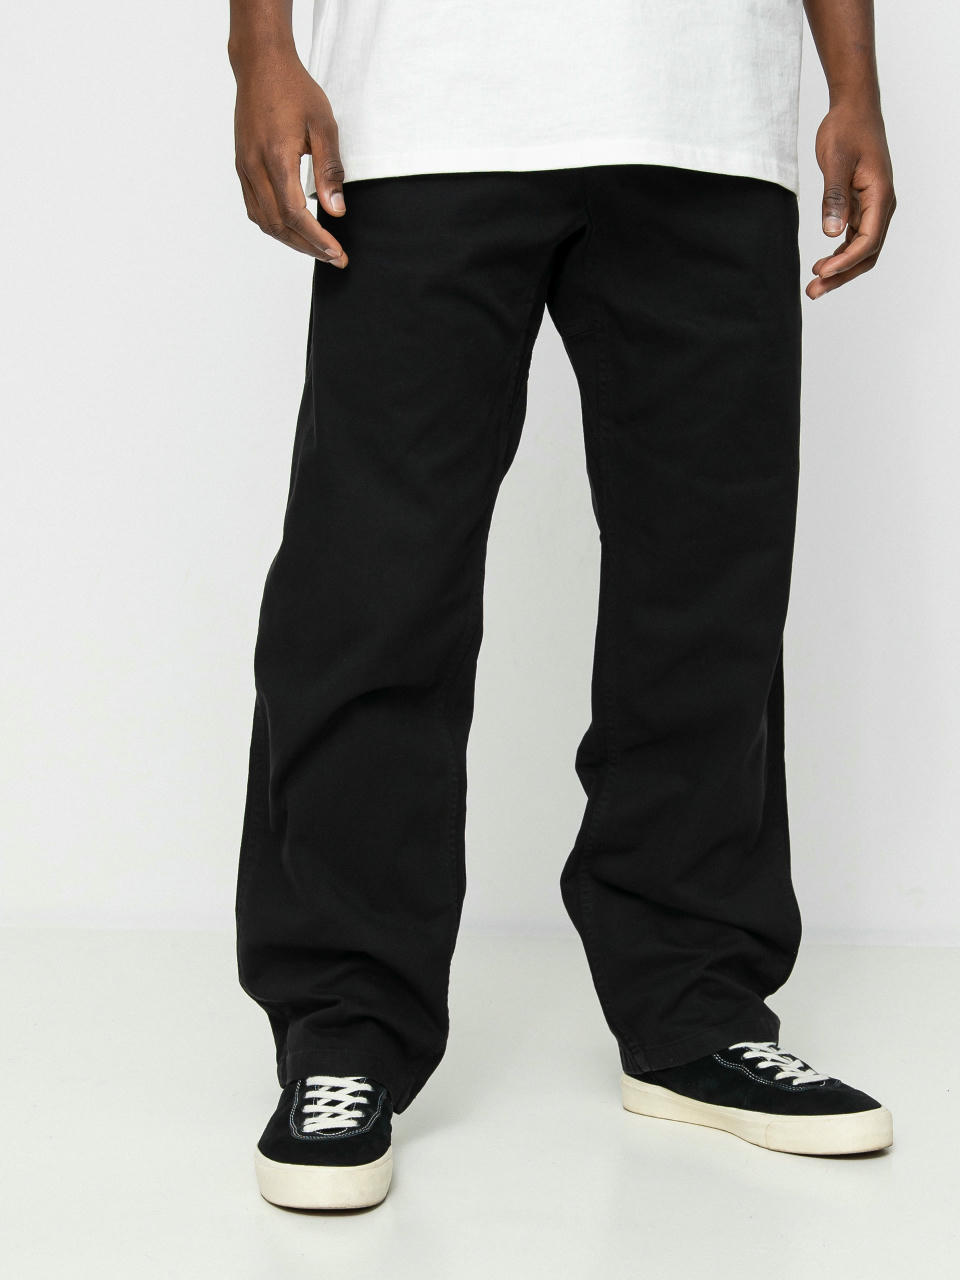 Gramicci Original Pants (black)